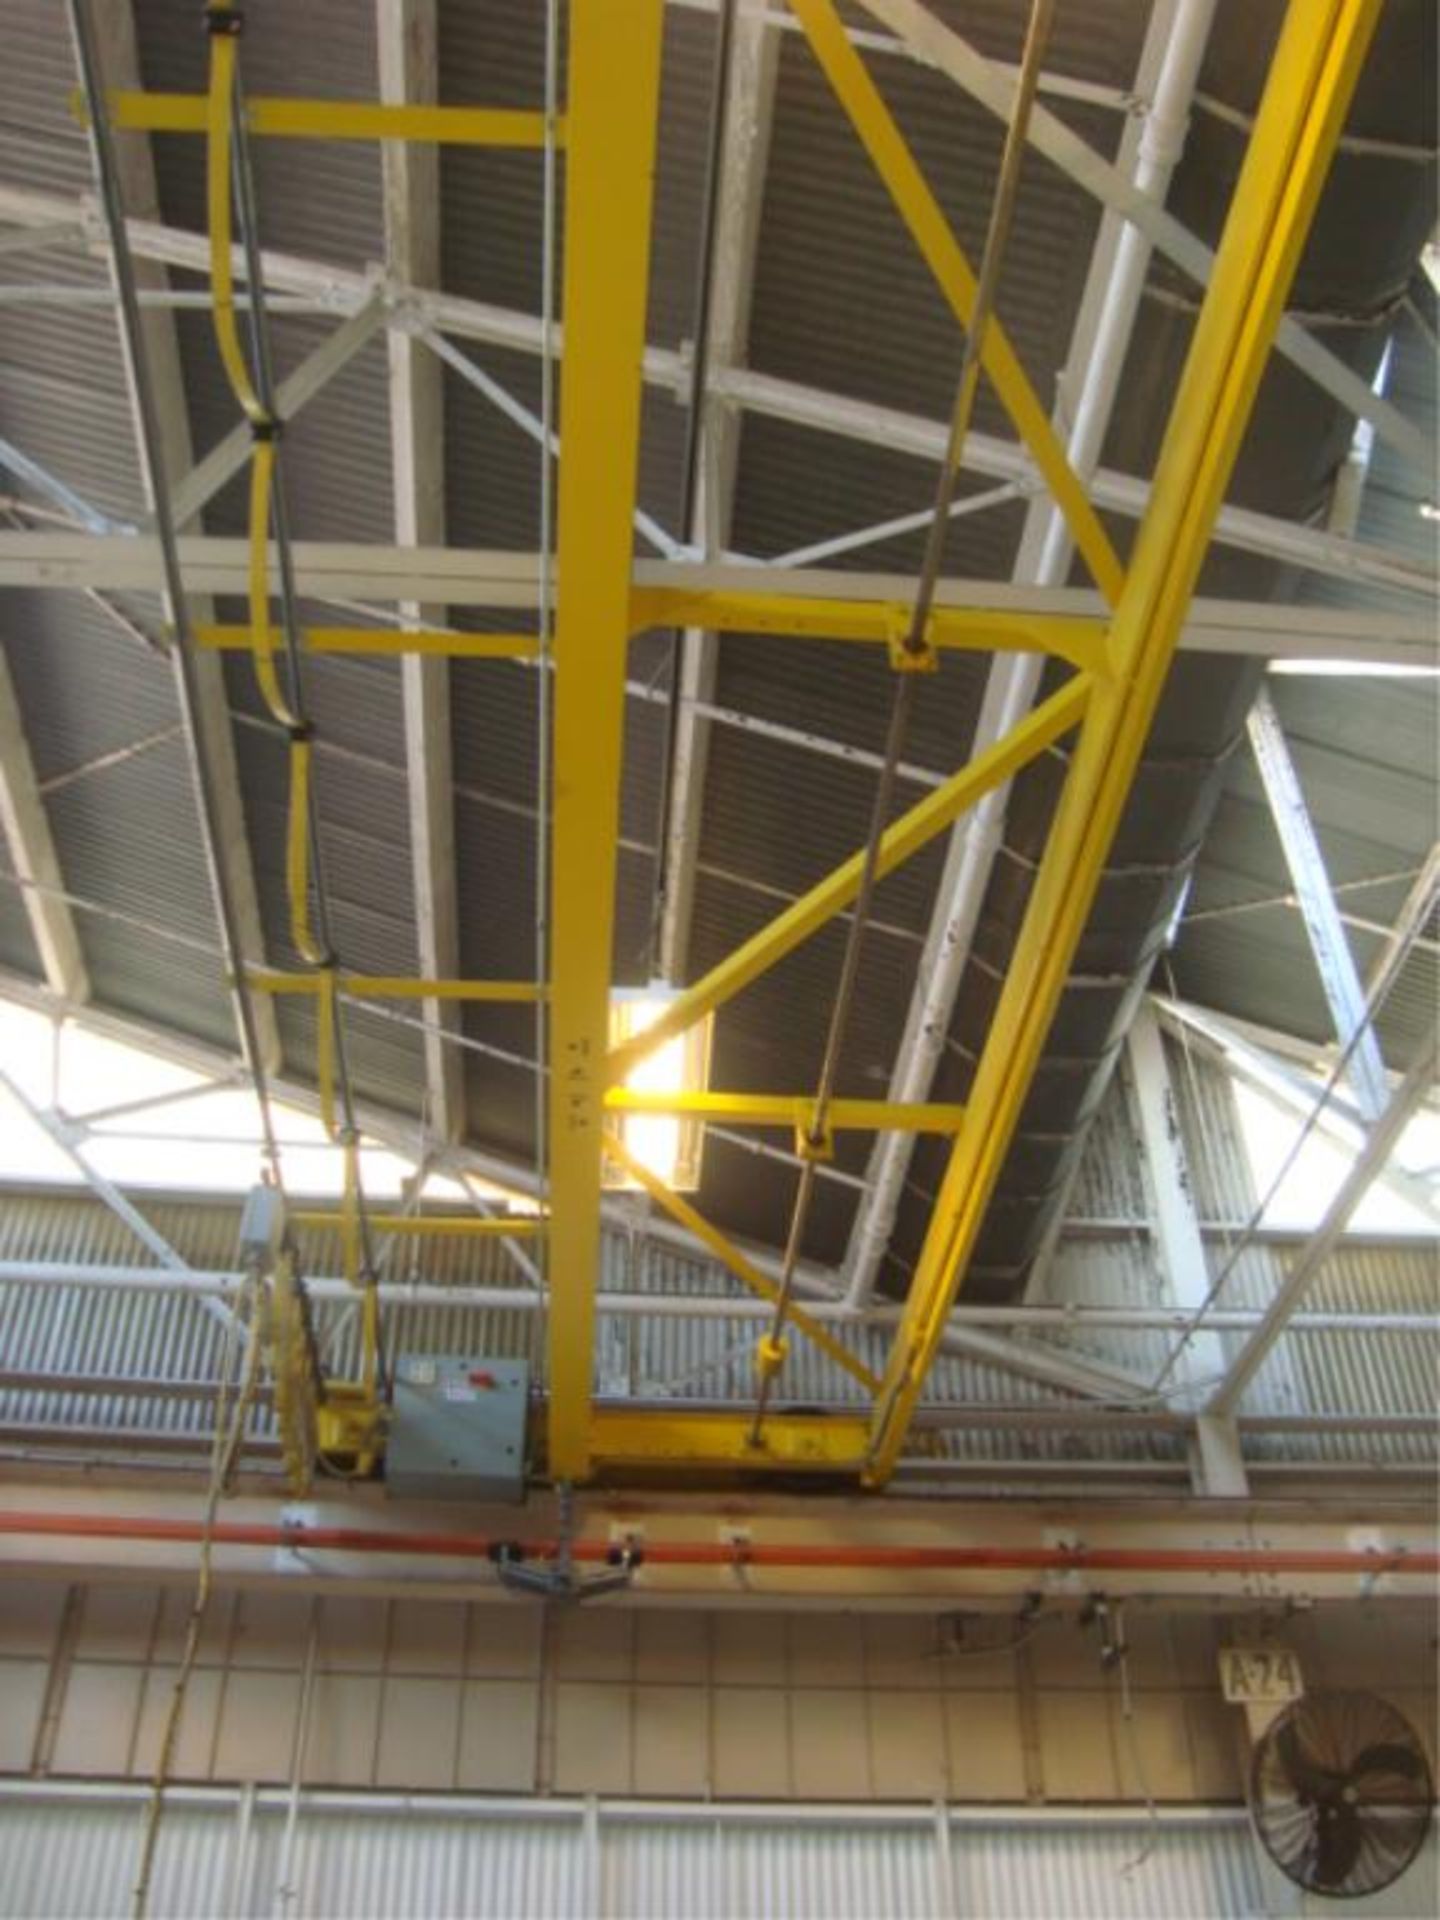 3-Ton Capacity Overhead Bridge Crane - Image 5 of 13